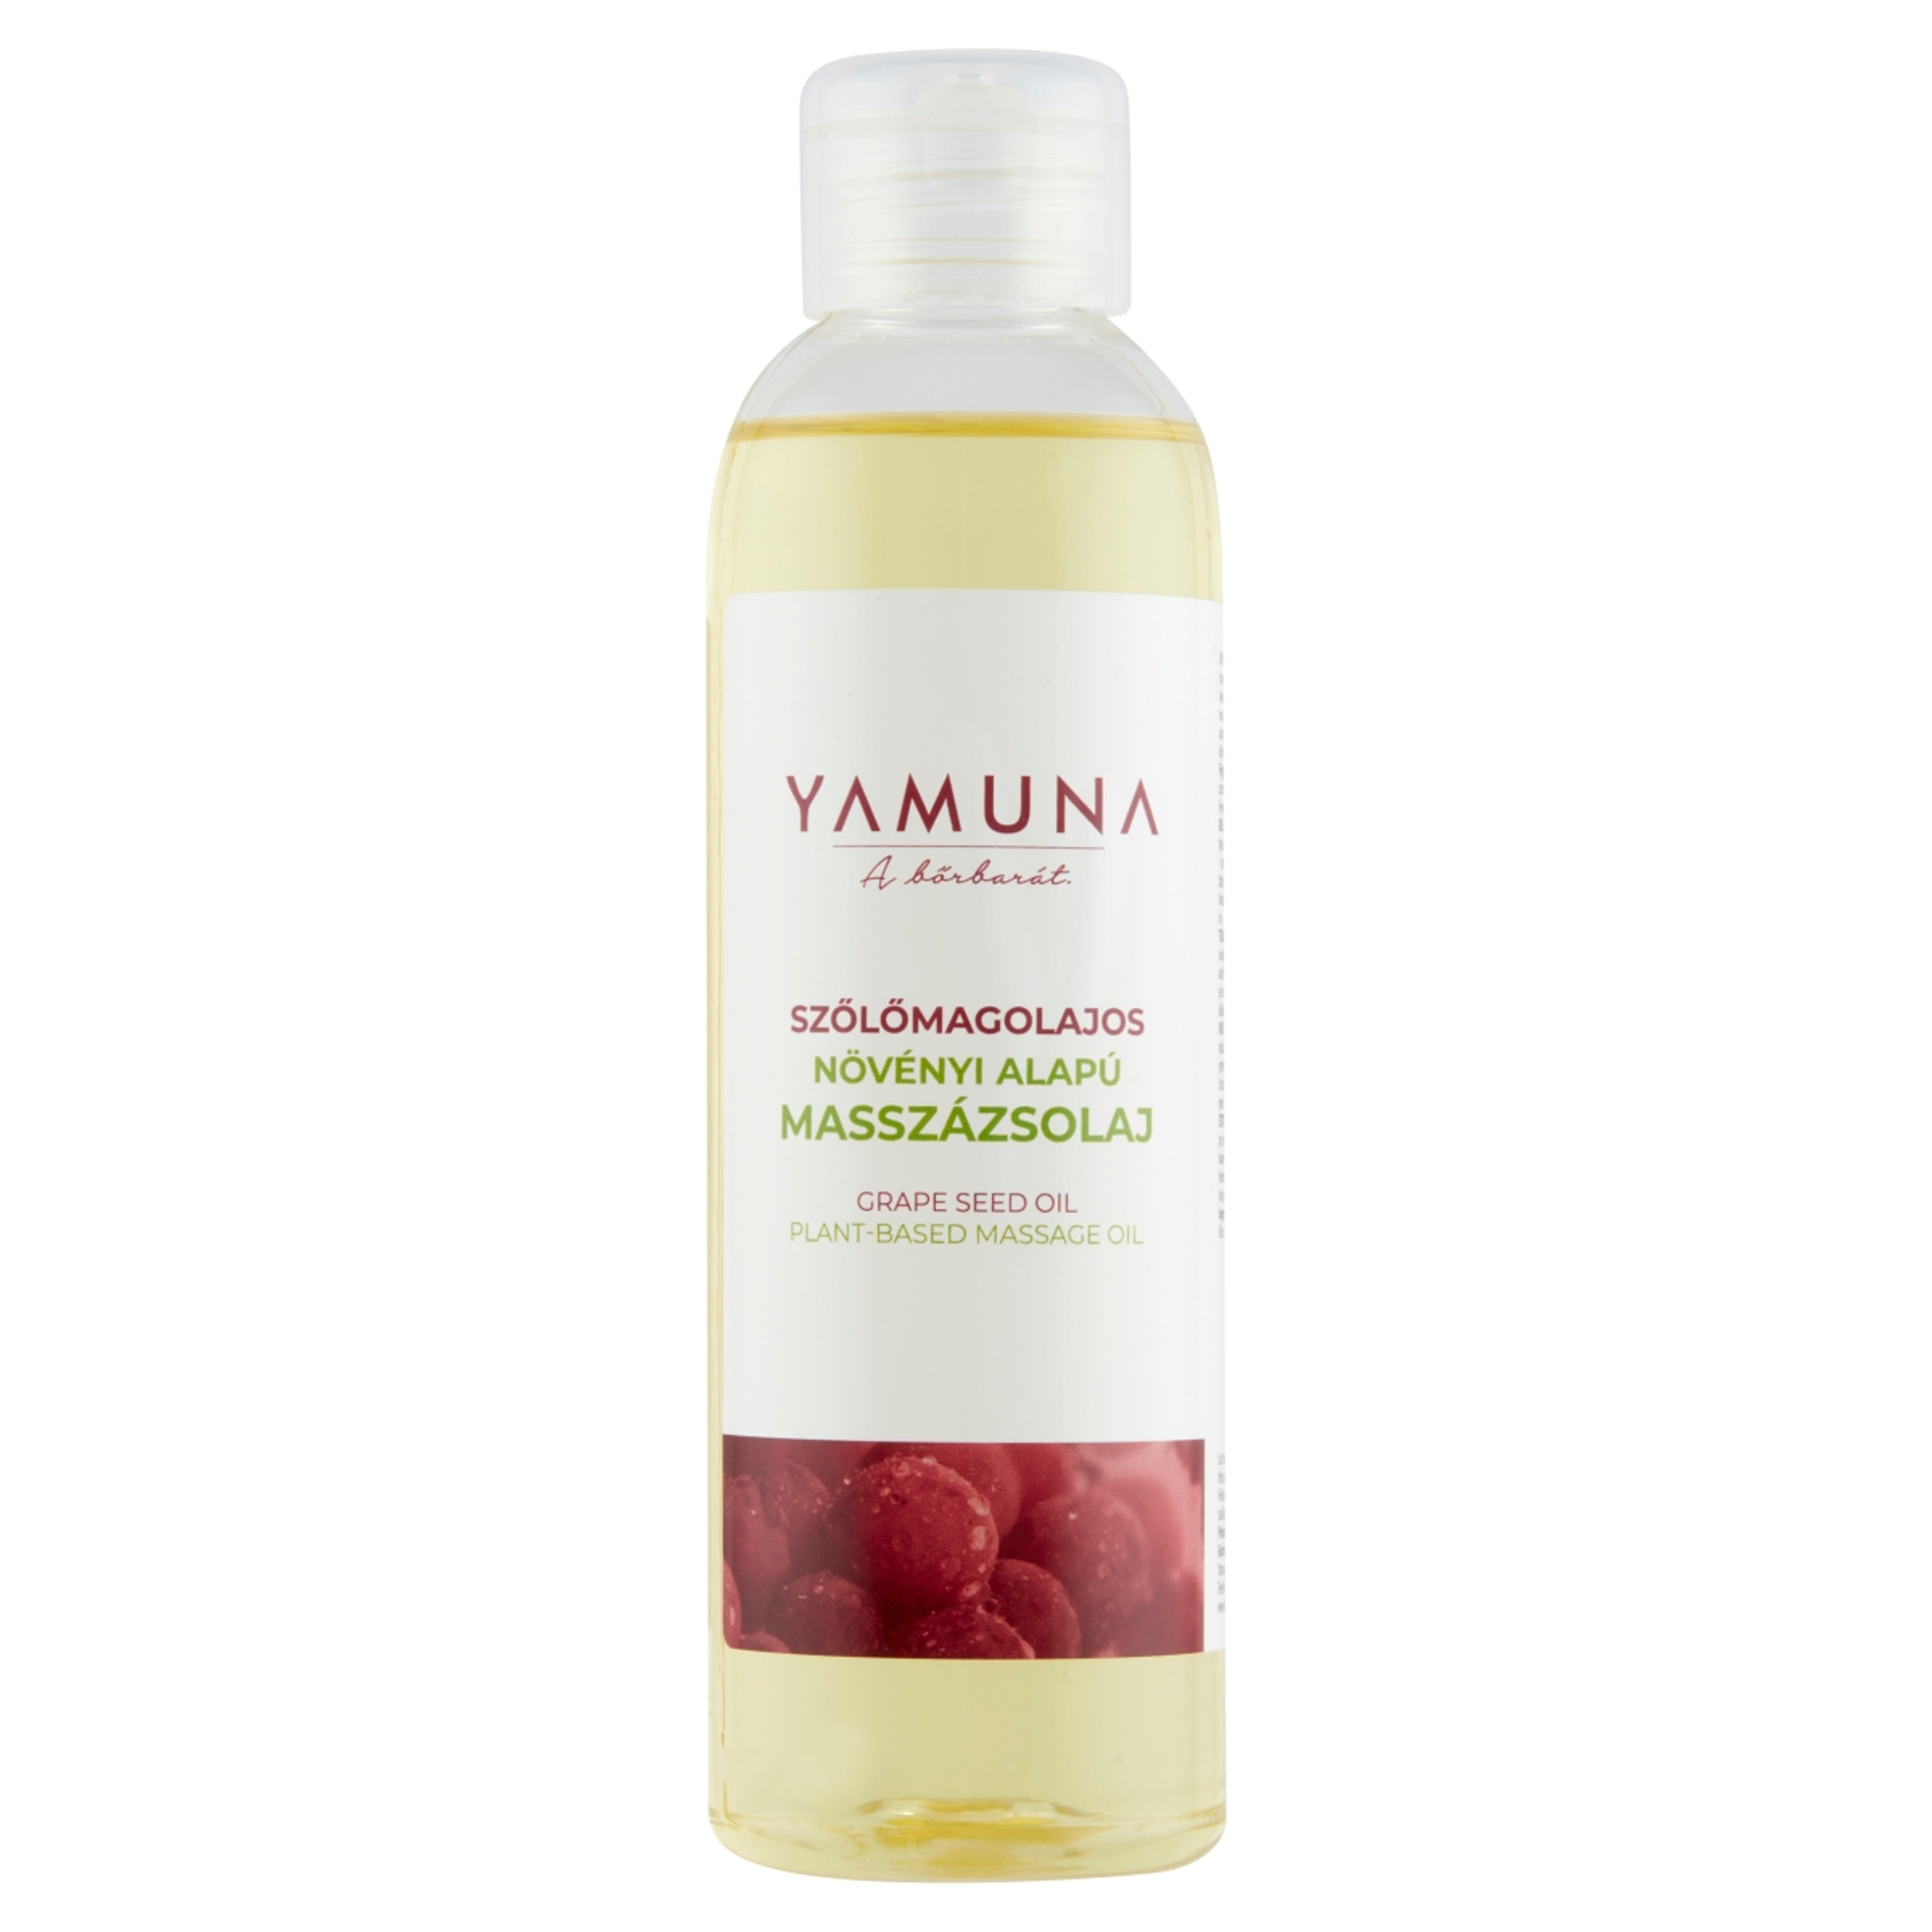 Yamuna szőlőmagos masszázsolaj - 250 ml-1